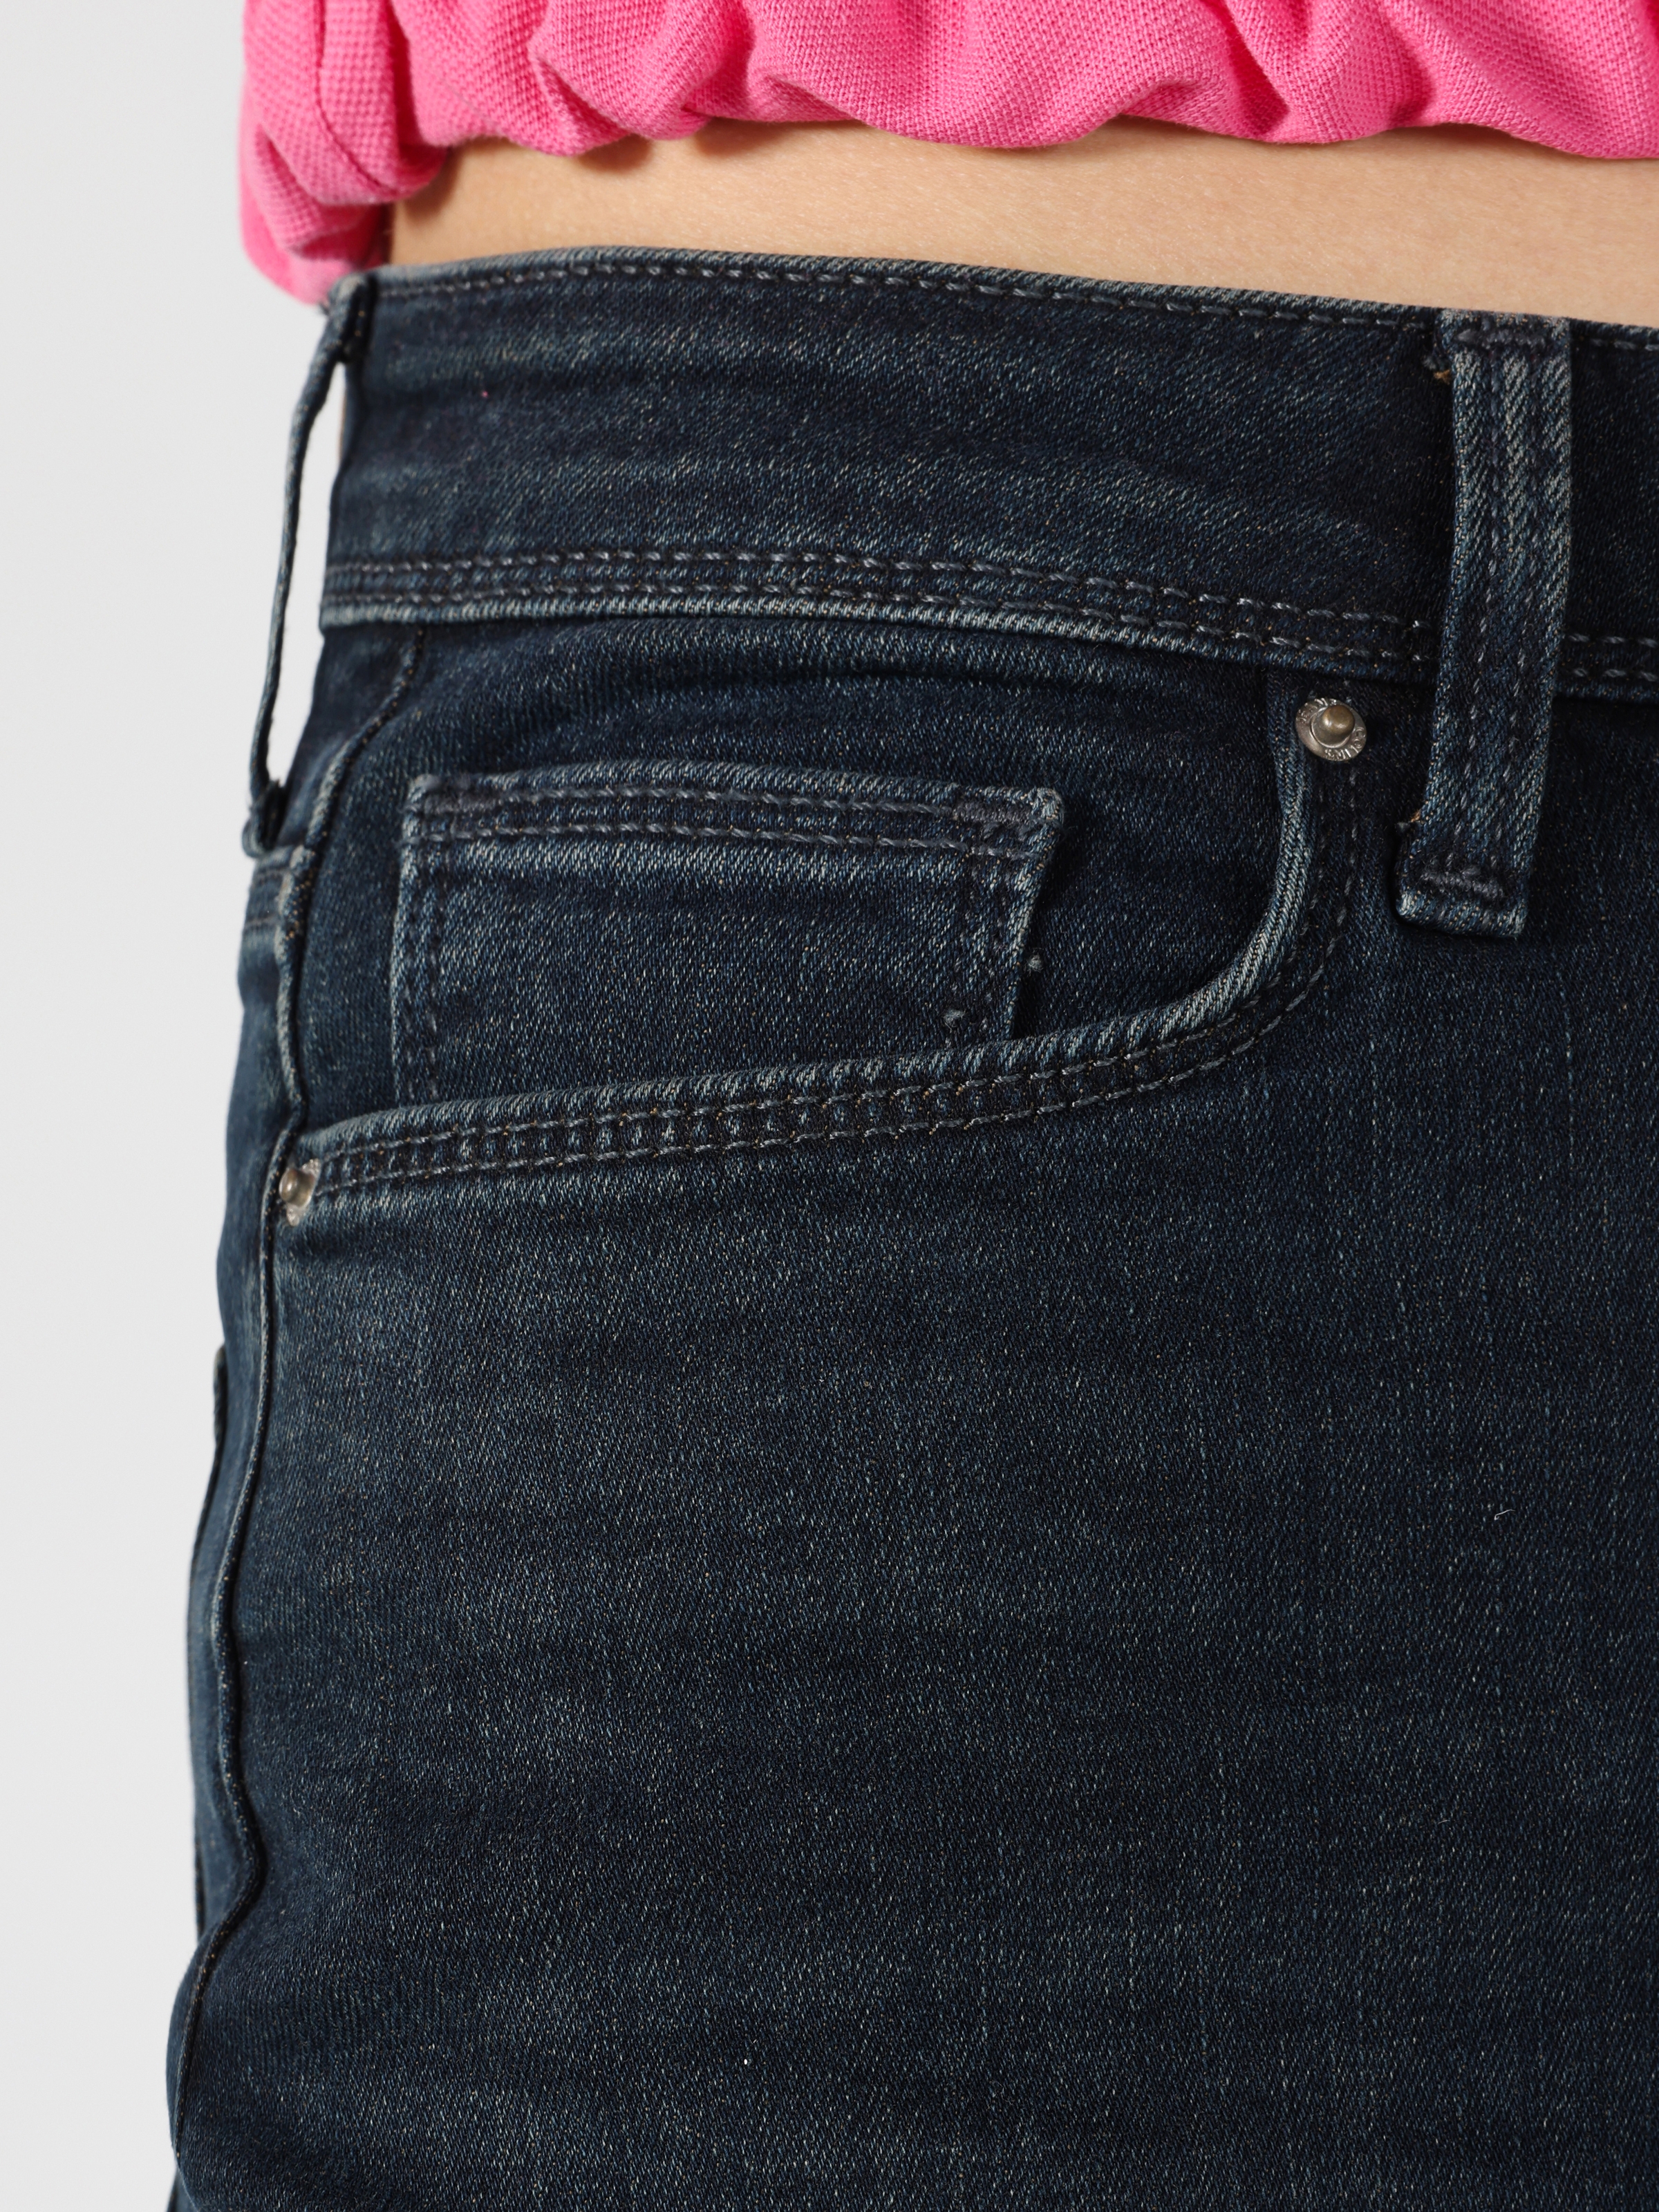 اعرض التفاصيل لـ 896 ماريا قطع مريحة عالية الخصر مستقيم الساق بنطلون جينز أزرق داكن للمرأة